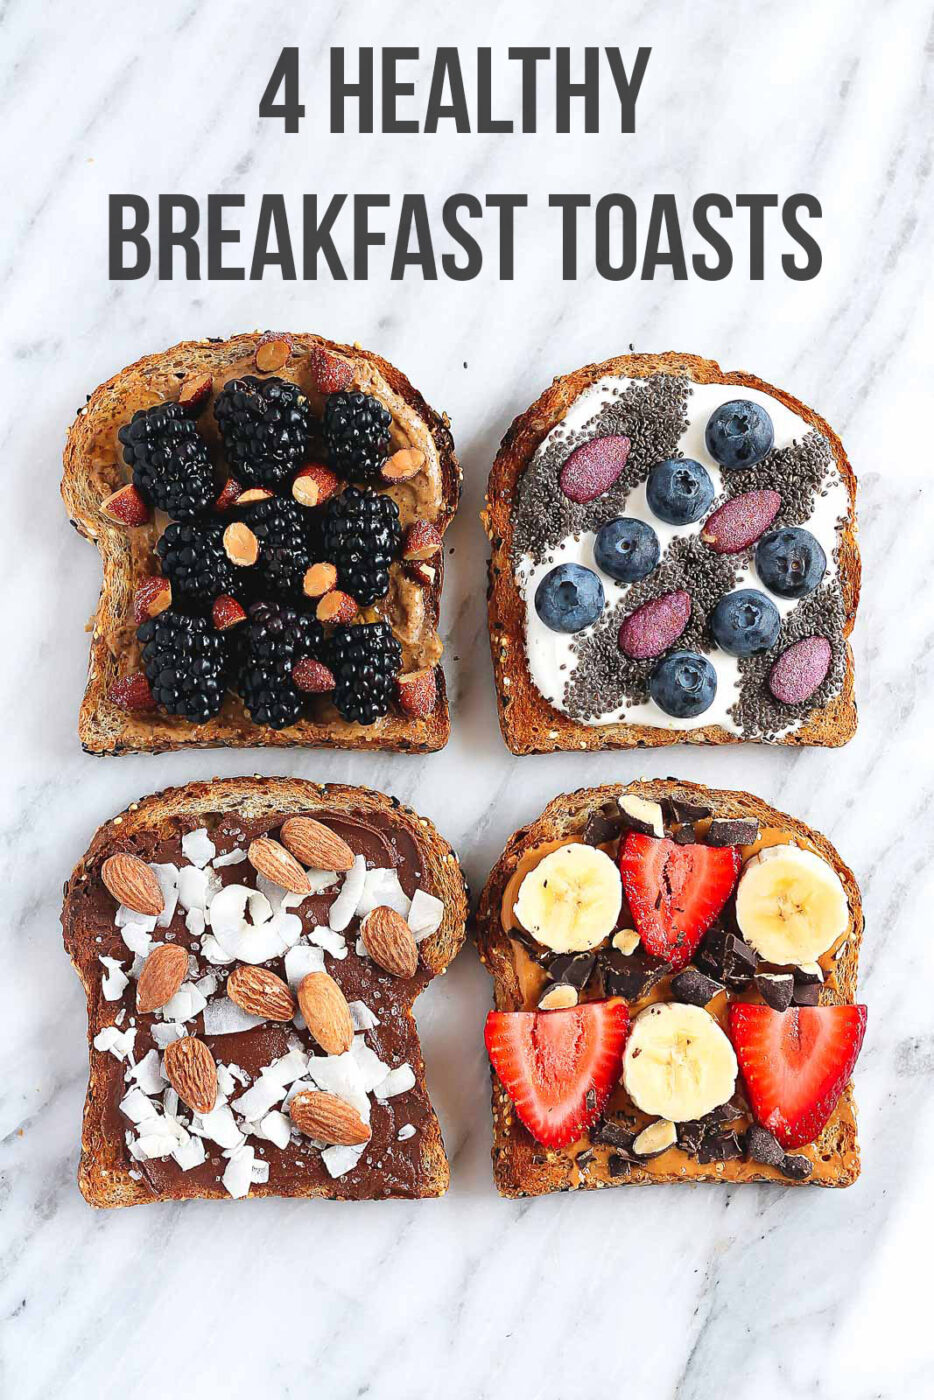 15 Easy Vegan Breakfast Recipe Ideas for Busy Mornings (Part 2) - vegan recipes, Vegan Breakfast Recipe Ideas, Easy Vegan Breakfast Recipe Ideas, Easy Vegan Breakfast Recipe, Breakfast Recipe Ideas